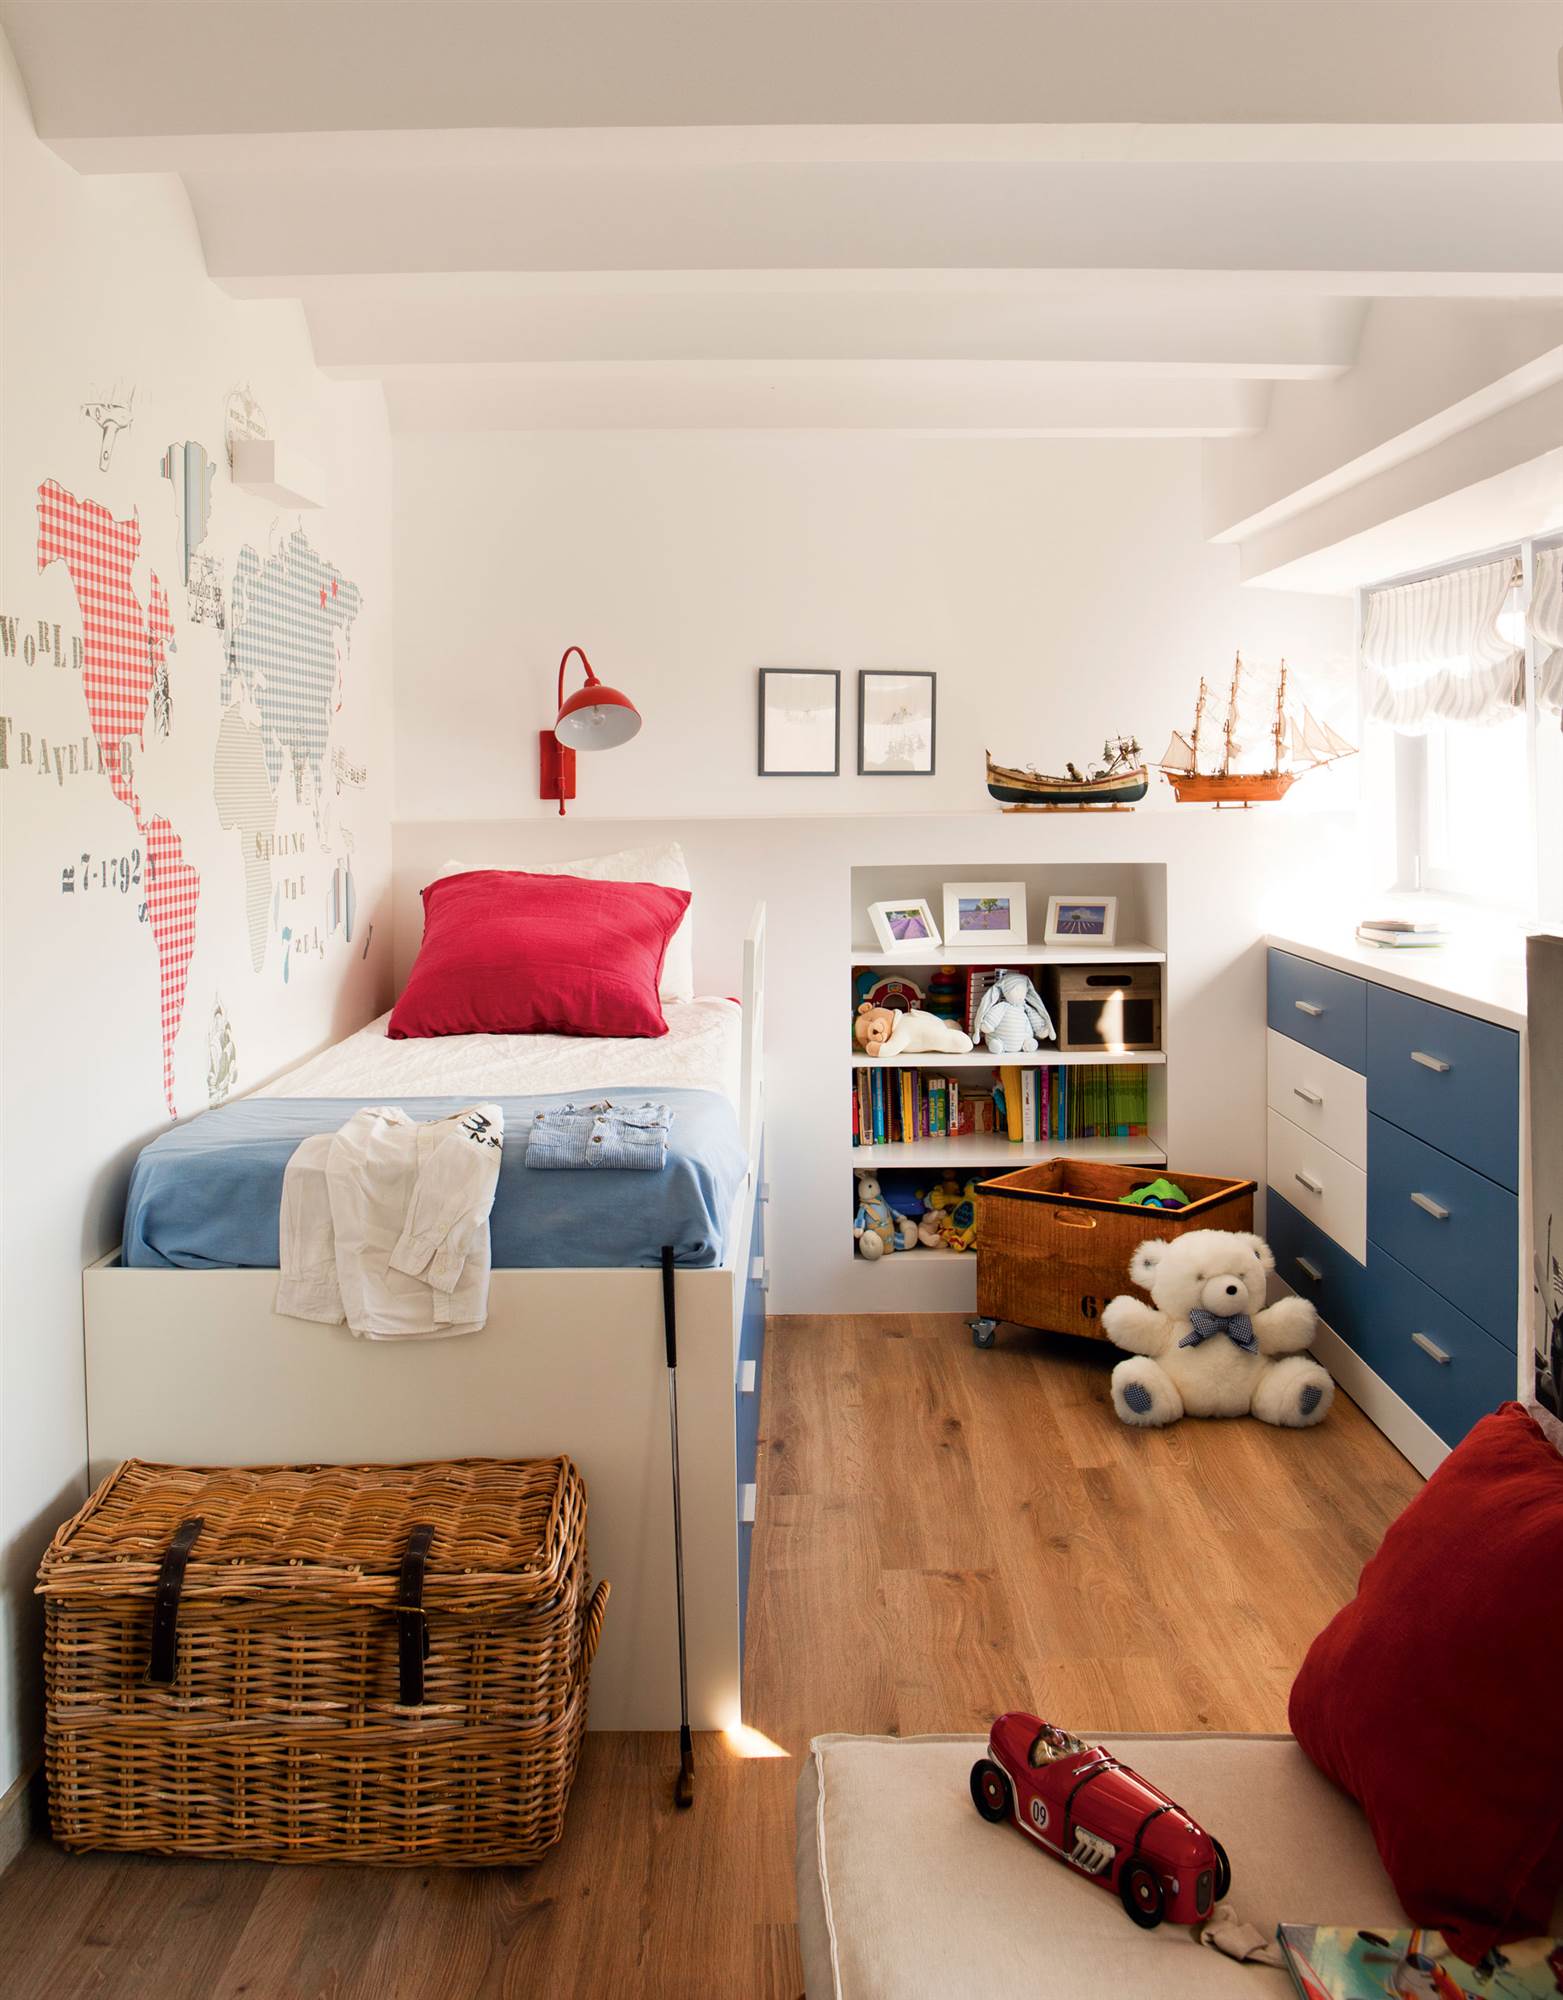 Dormitorio infantil con vinilo. enla paredy cama con cajones en azul y blanco.